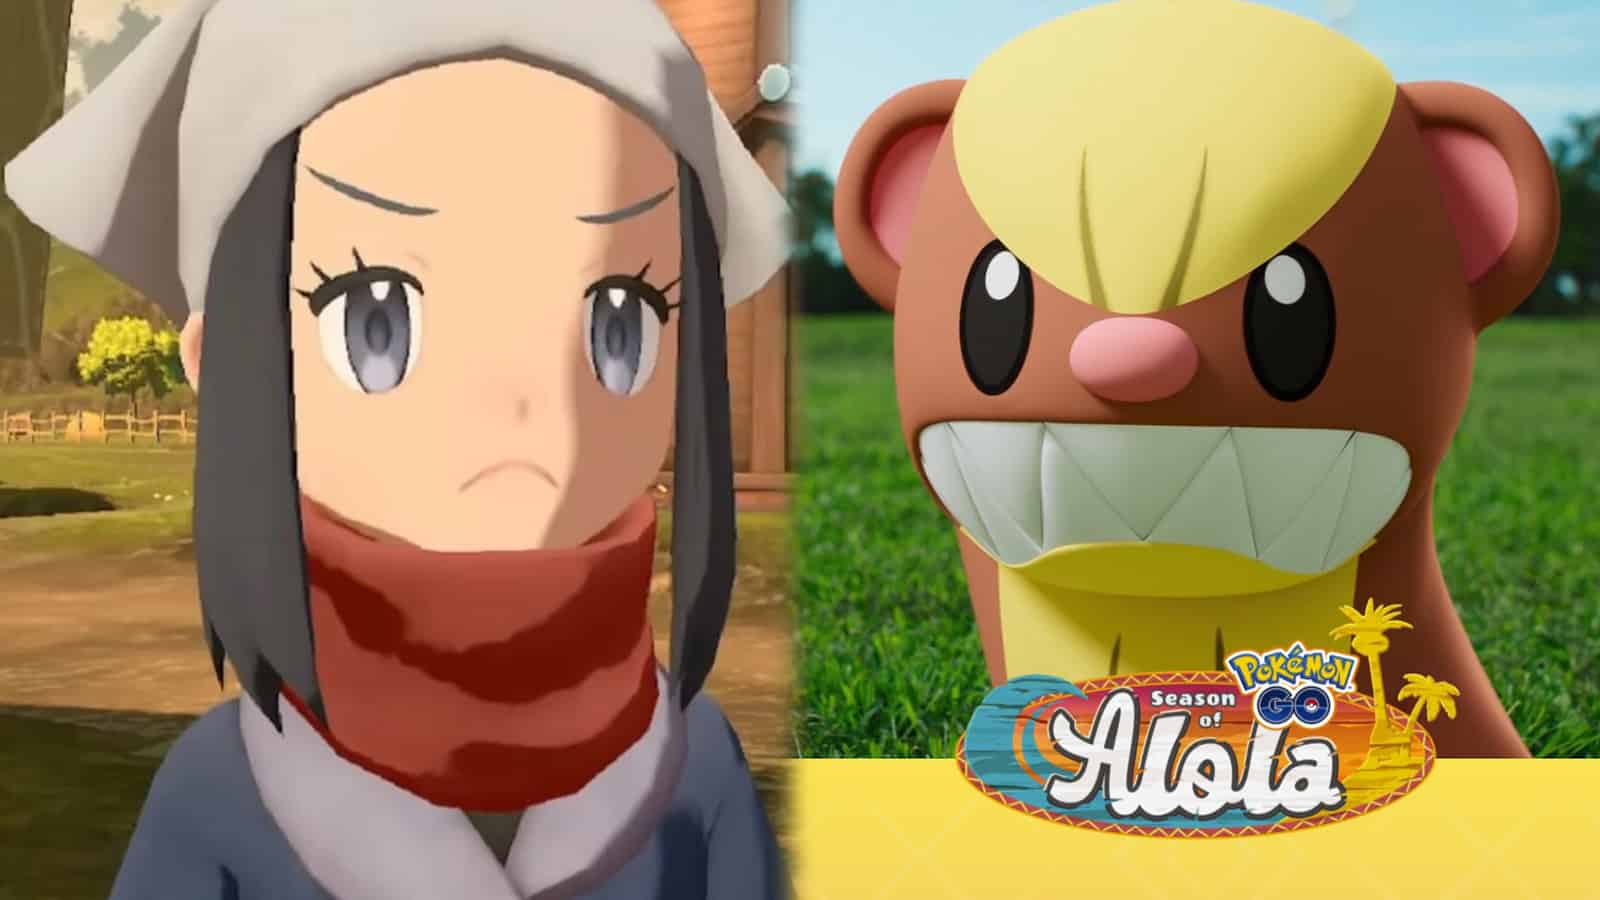 Pokemon Go players frustrated with Alola Pokedex spawn rates: “More like  Season of Birds” - Dexerto